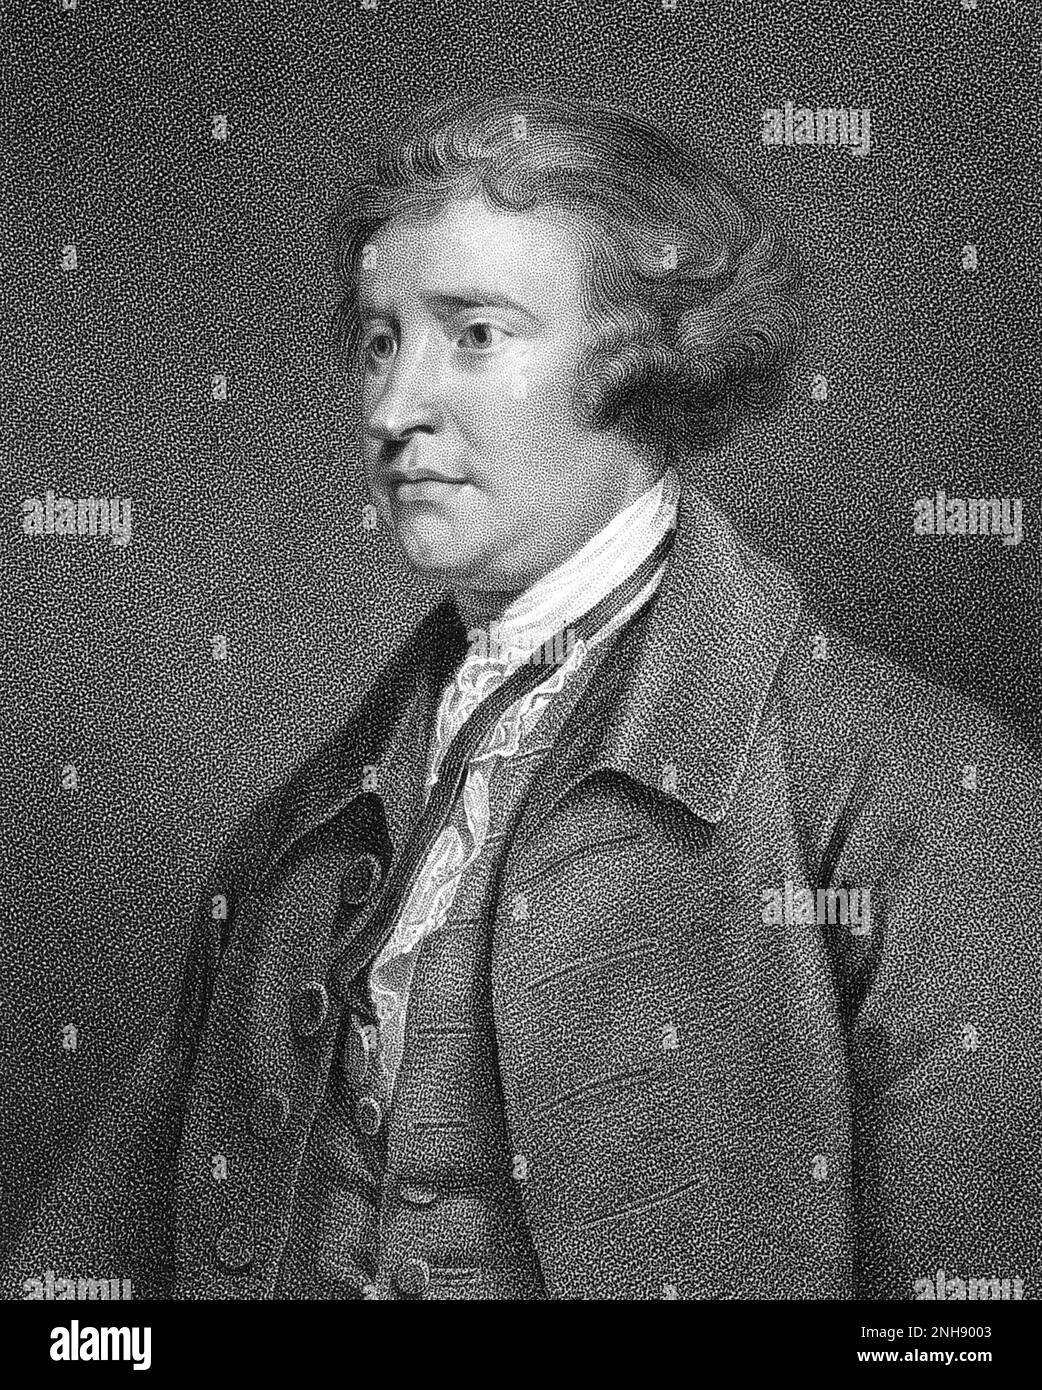 Edmund Burke (1729-1797) war ein anglo-irischer Staatsmann, Ökonom und Philosoph. Gravur nach Malerei von Joshua Reynolds, c.‚Äâ1769. Stockfoto